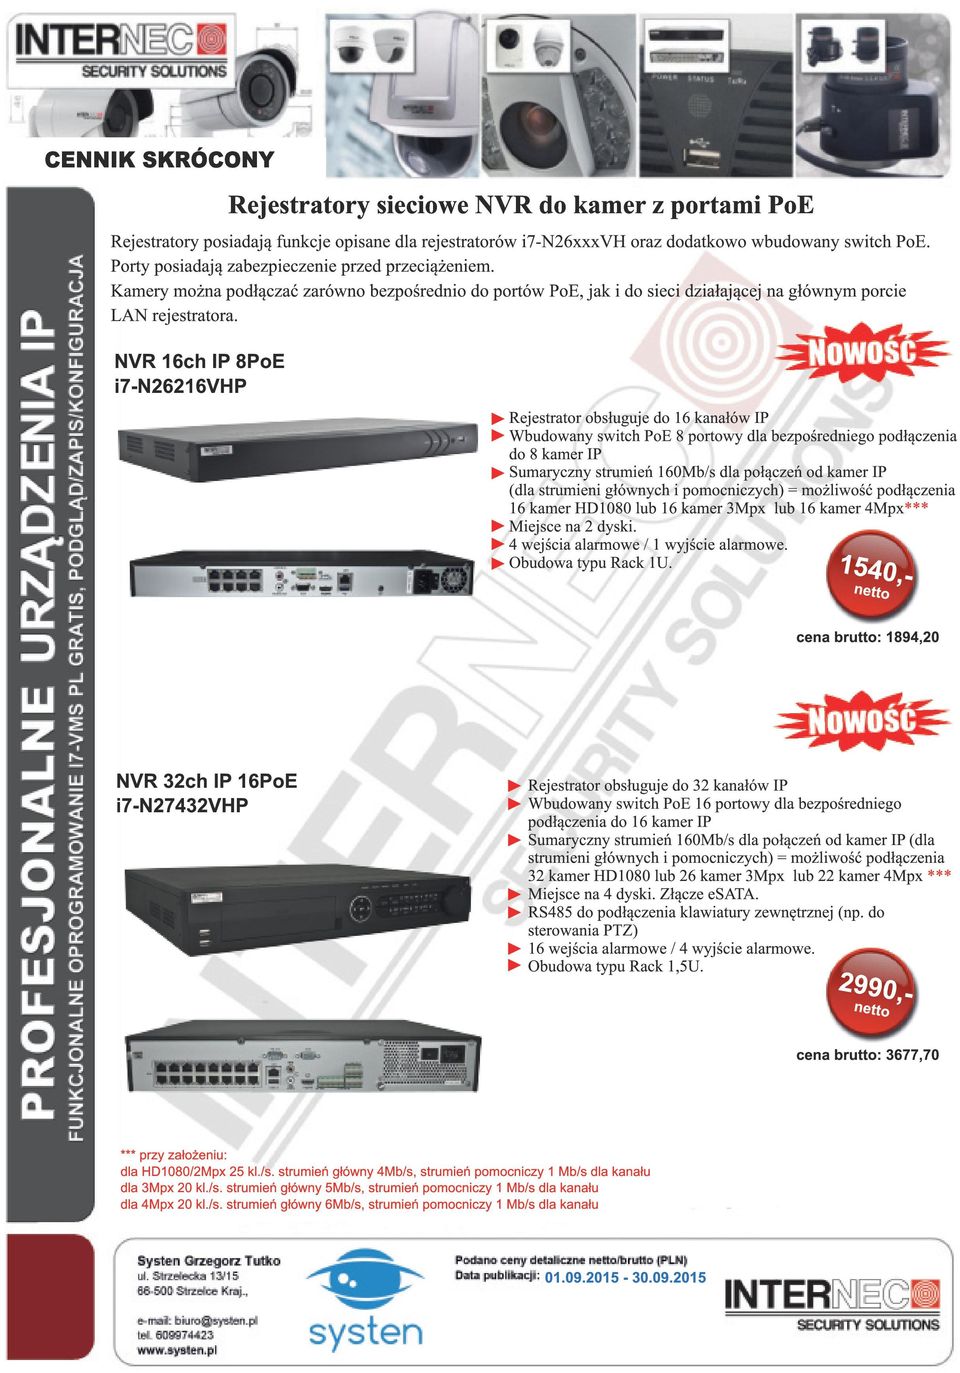 NVR 1 6ch IP 8 i7-n2621 6VHP Rejestrator obsługuje do 16 kanałów IP Wbudowany switch 8 portowy dla bezpośredniego podłączenia do 8 kamer IP Sumaryczny strumień 160Mb/s dla połączeń od kamer IP (dla